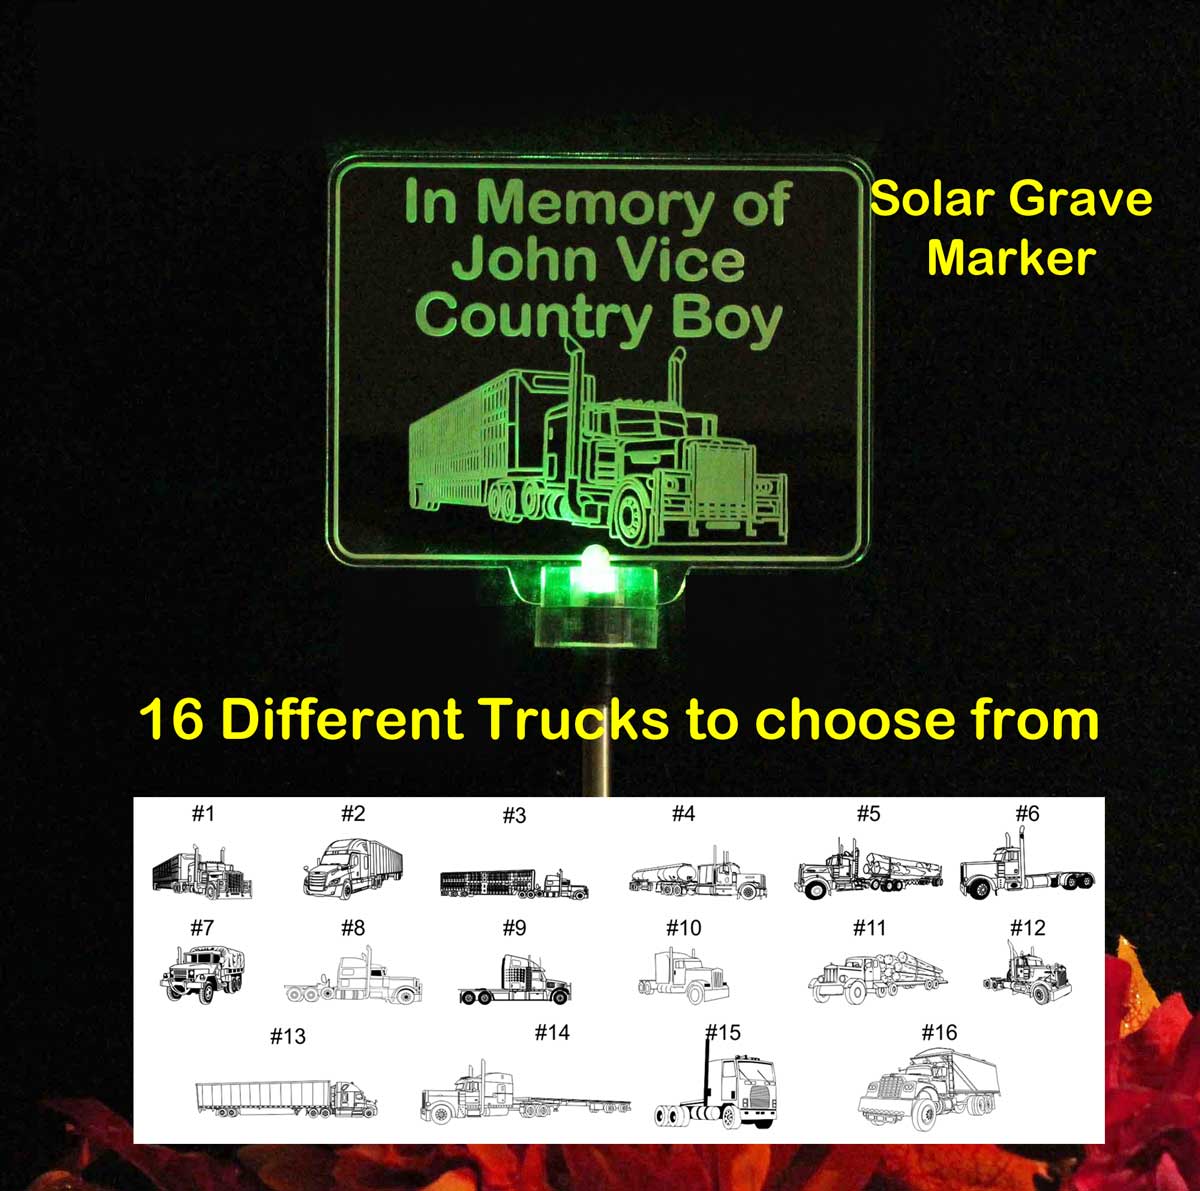 Cattle Semi Truck Solar Light, Personalized Livestock Truck Grave Marker, Garden Light